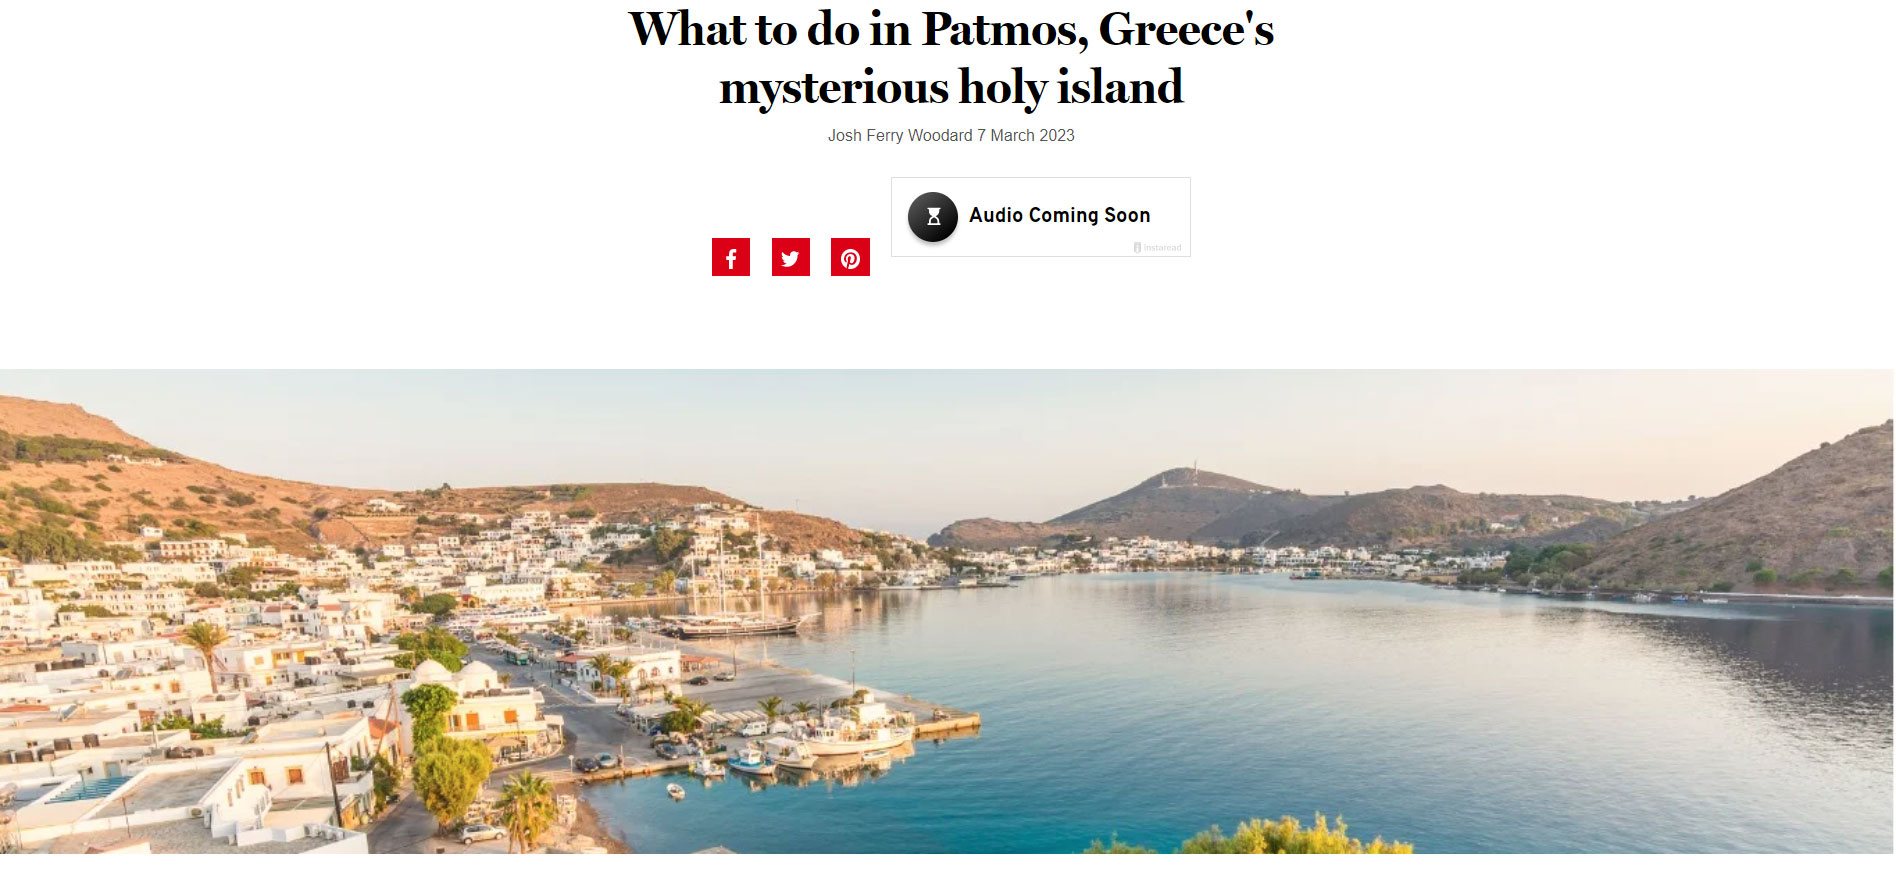 Το Readers Digest χρακτηρίζει την Πάτμο το «μυστηριώδες ιερό νησί». Πατήστε στη φωτογραφία για να μεταφερθείτε στο ρεπορτάζ 